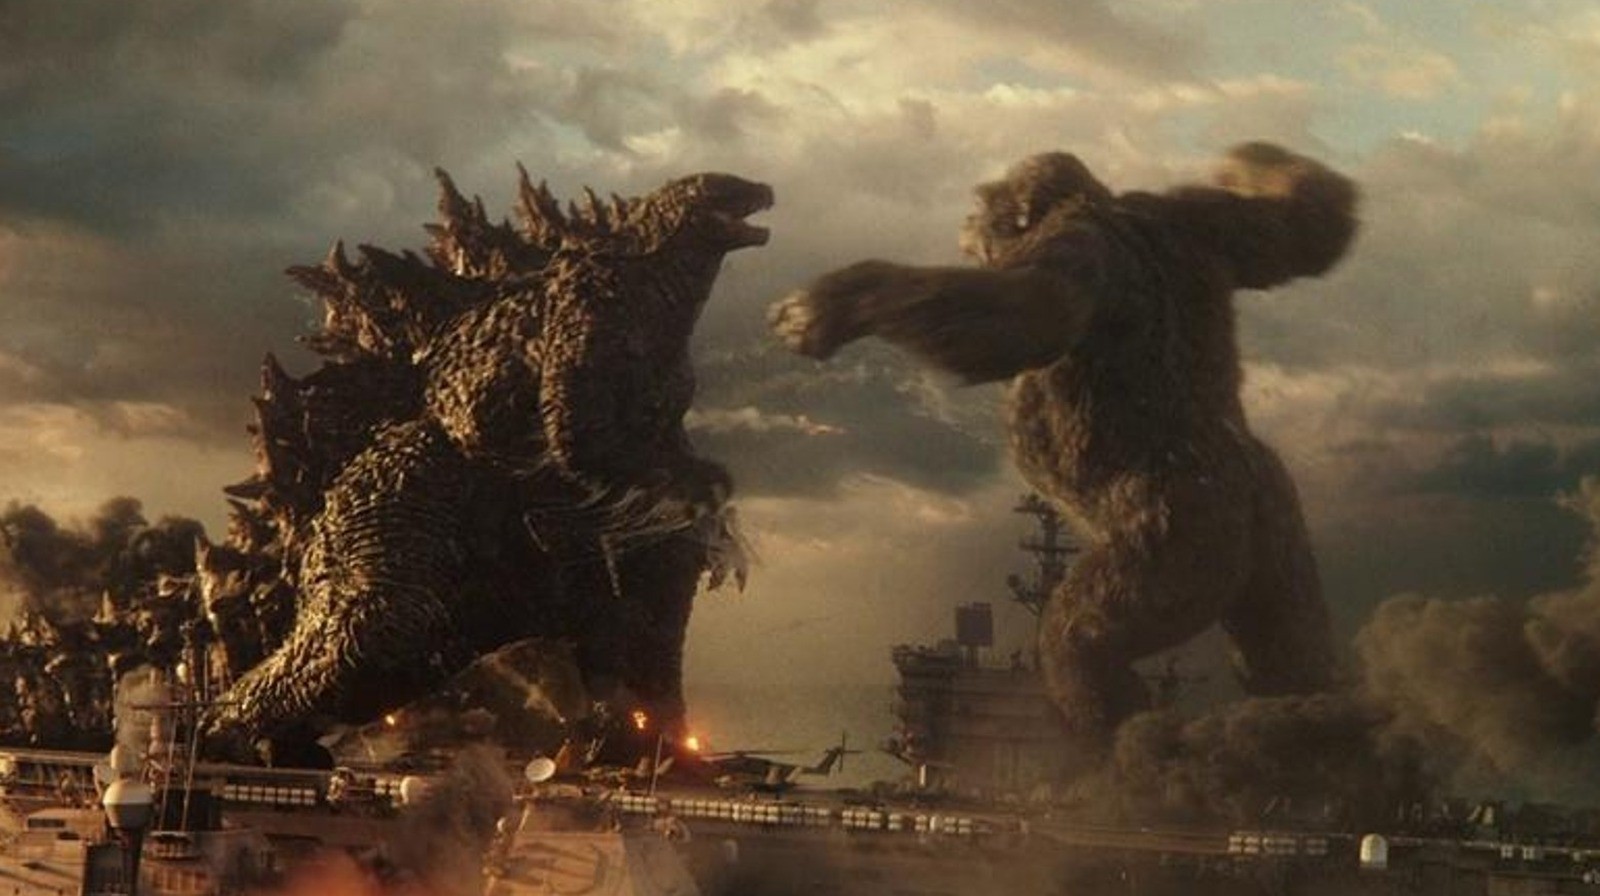 A still from Godzilla Vs. Kong